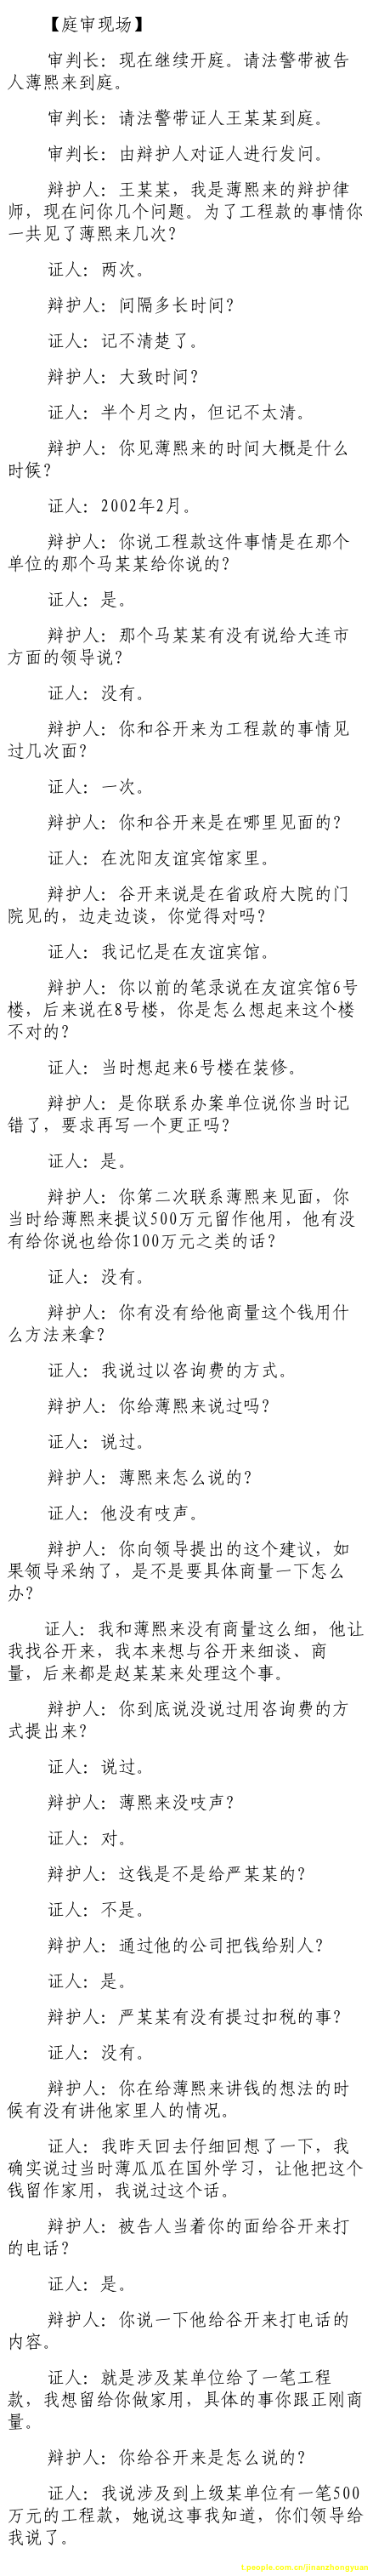 济南市中级法院官方微博公布的8月24日庭审现场记录（1）